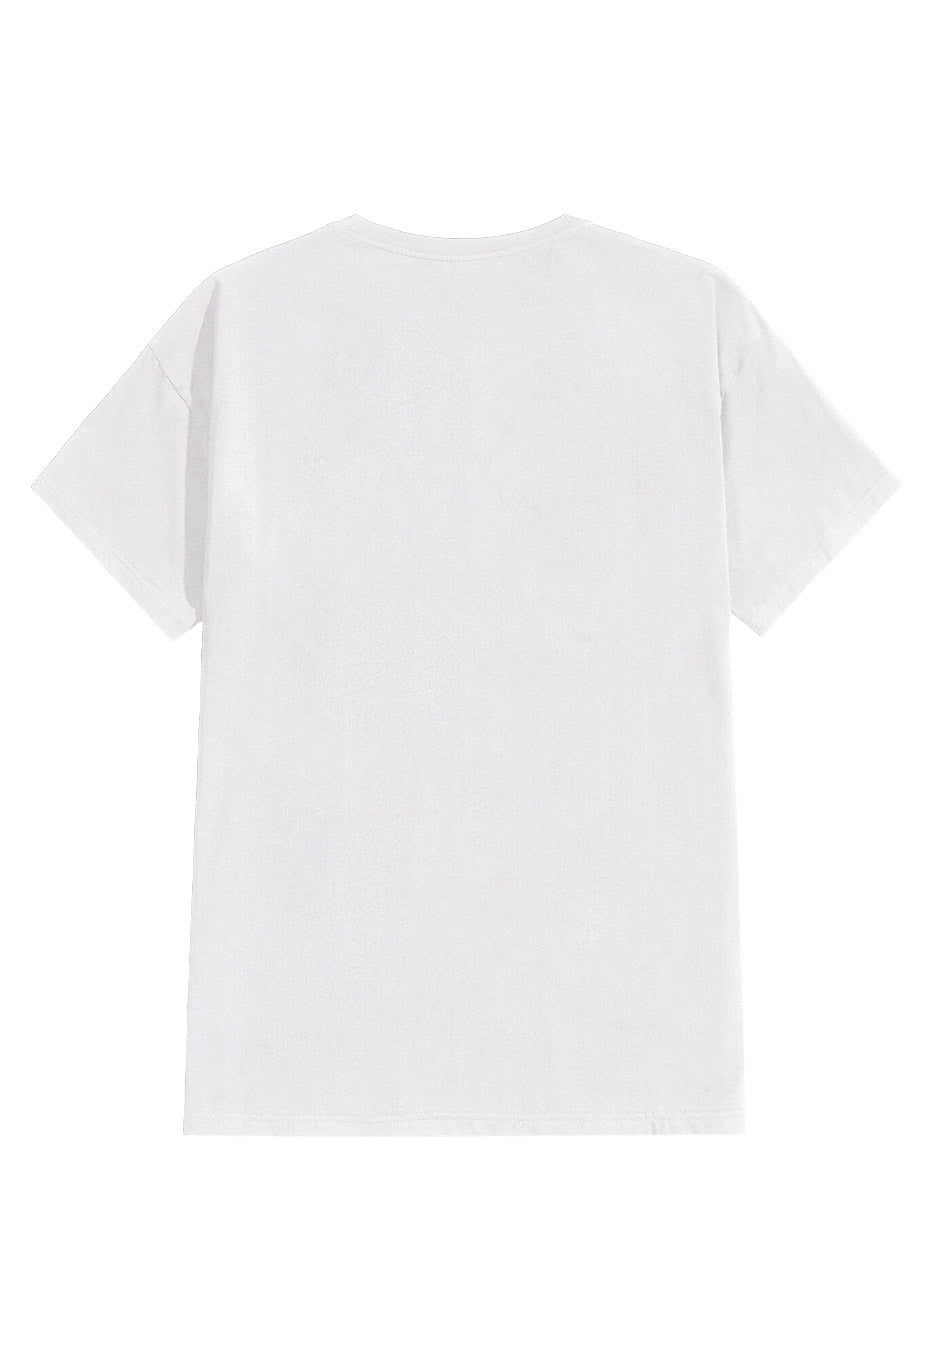 Creeper - Emo Sux White - T-Shirt